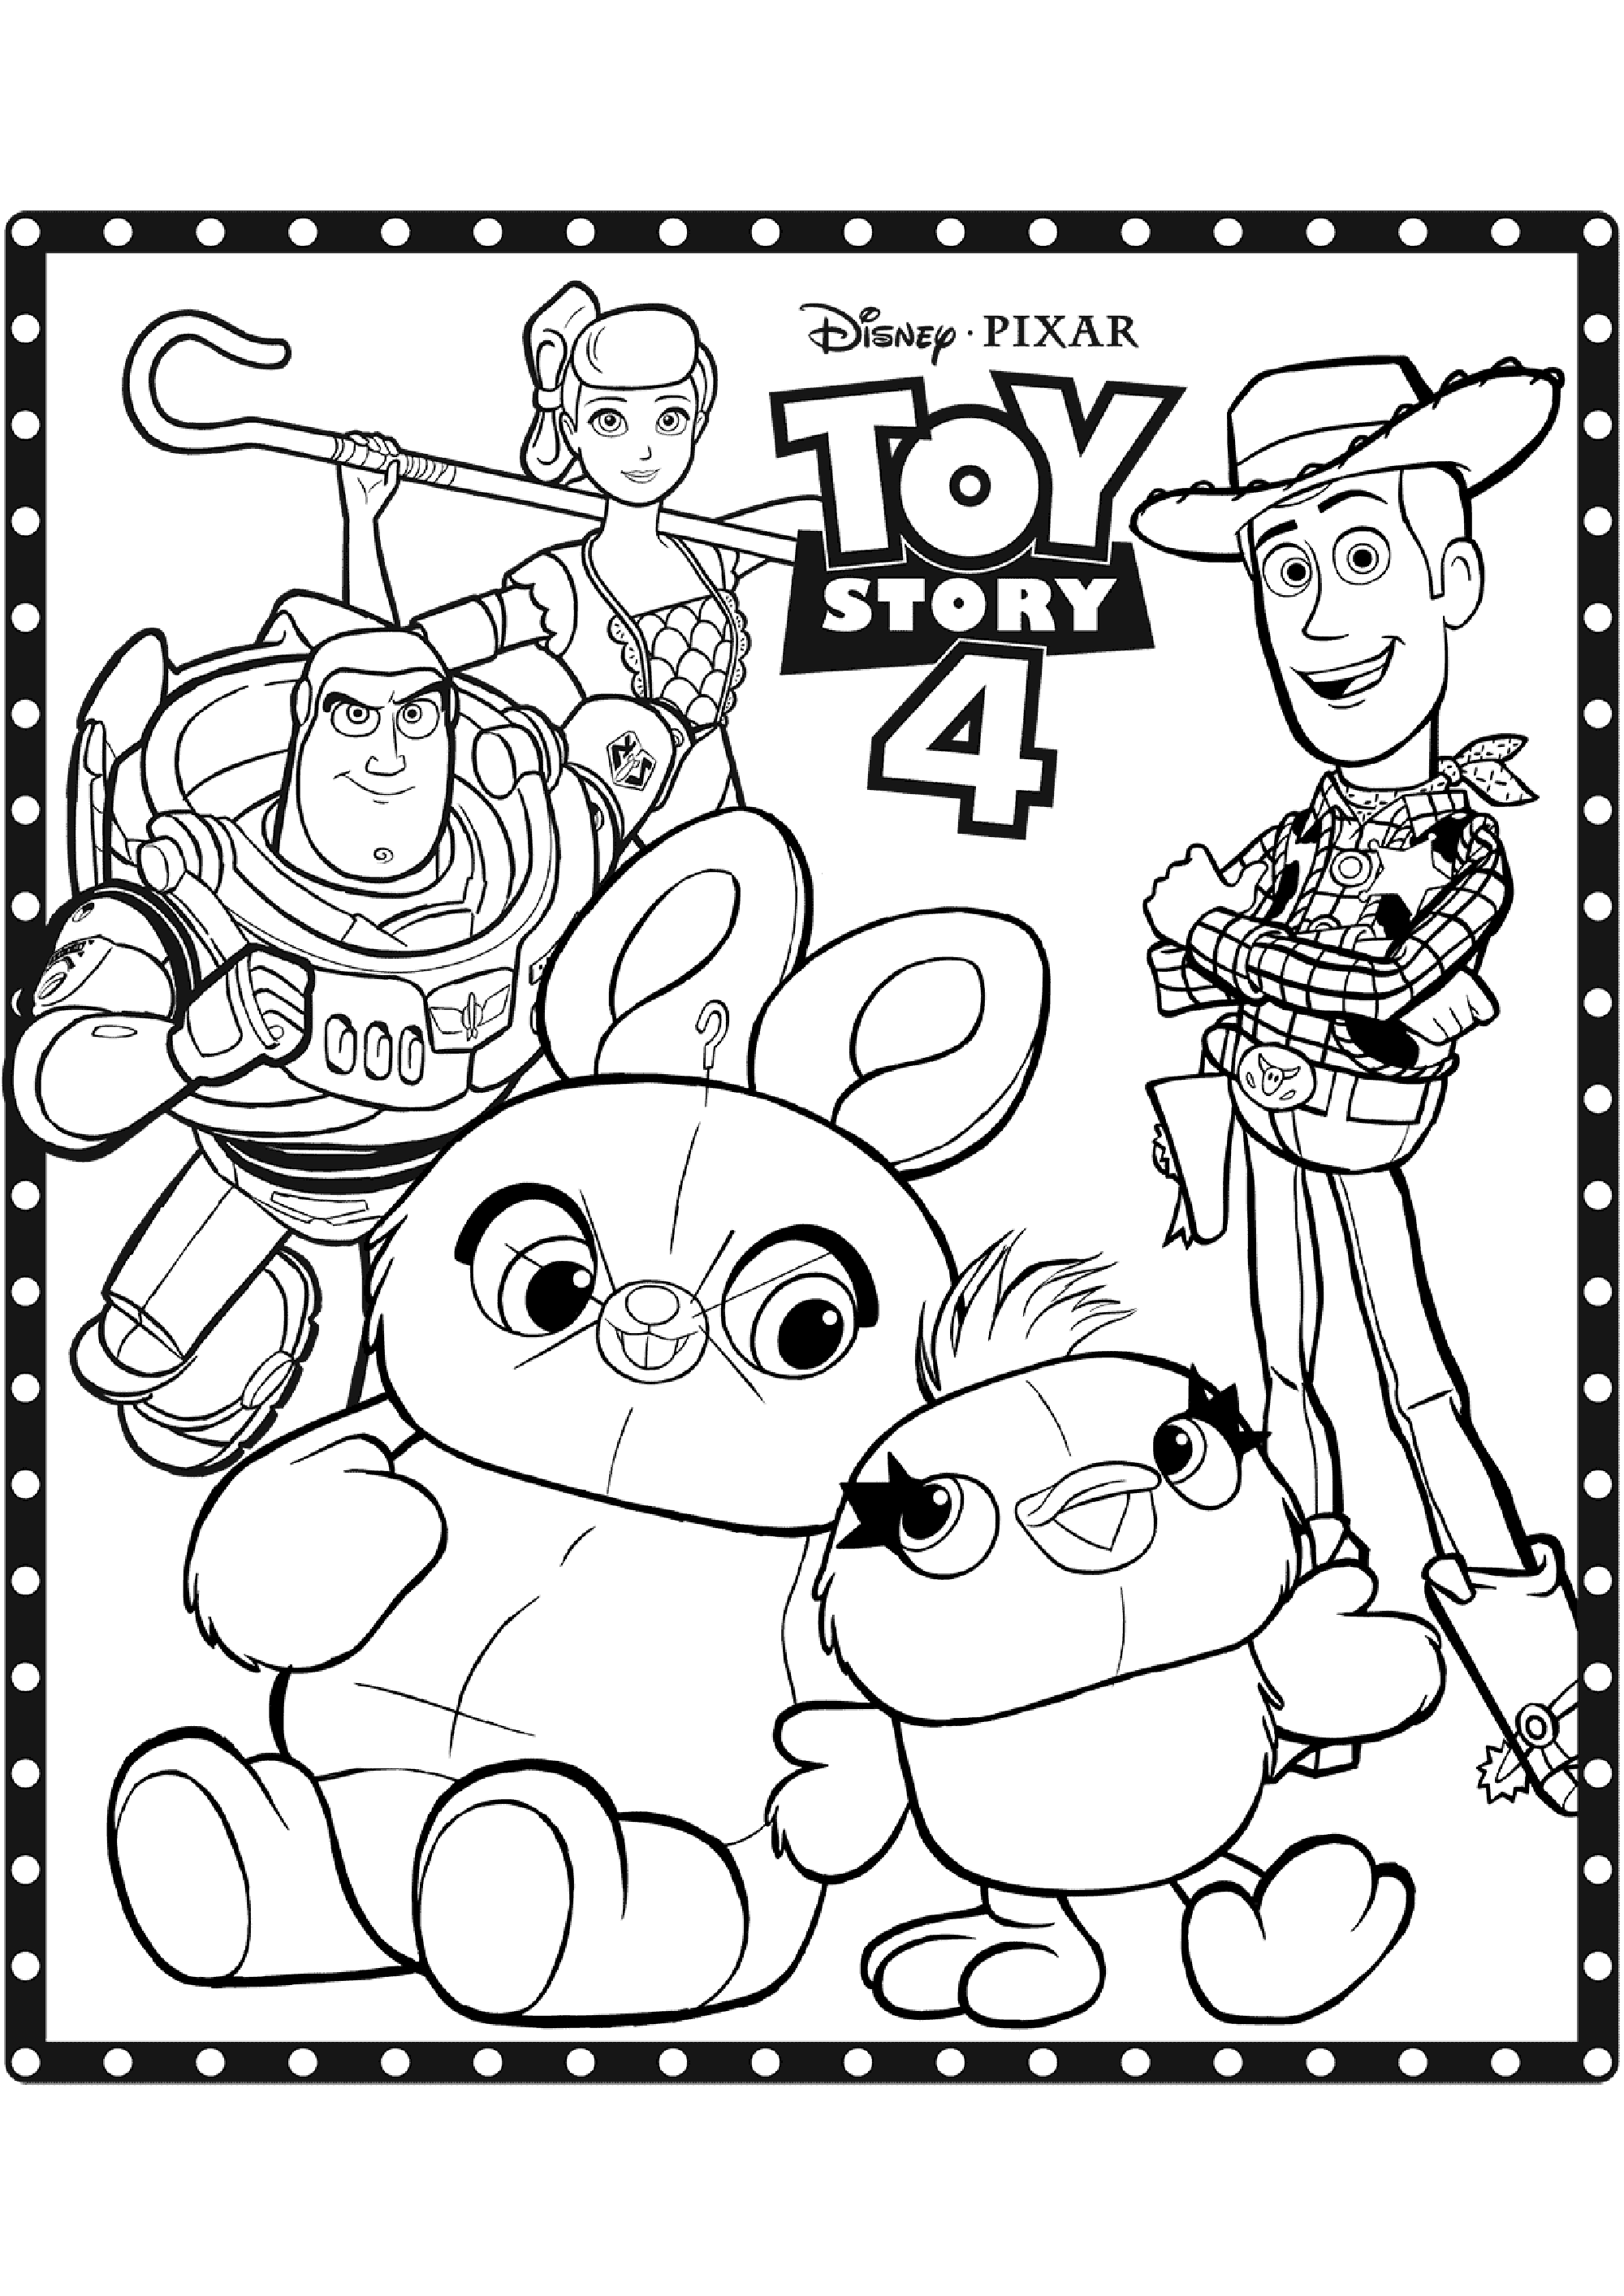 Dibujo de Toy Story 4 para descargar e imprimir para niños : Varios personajes